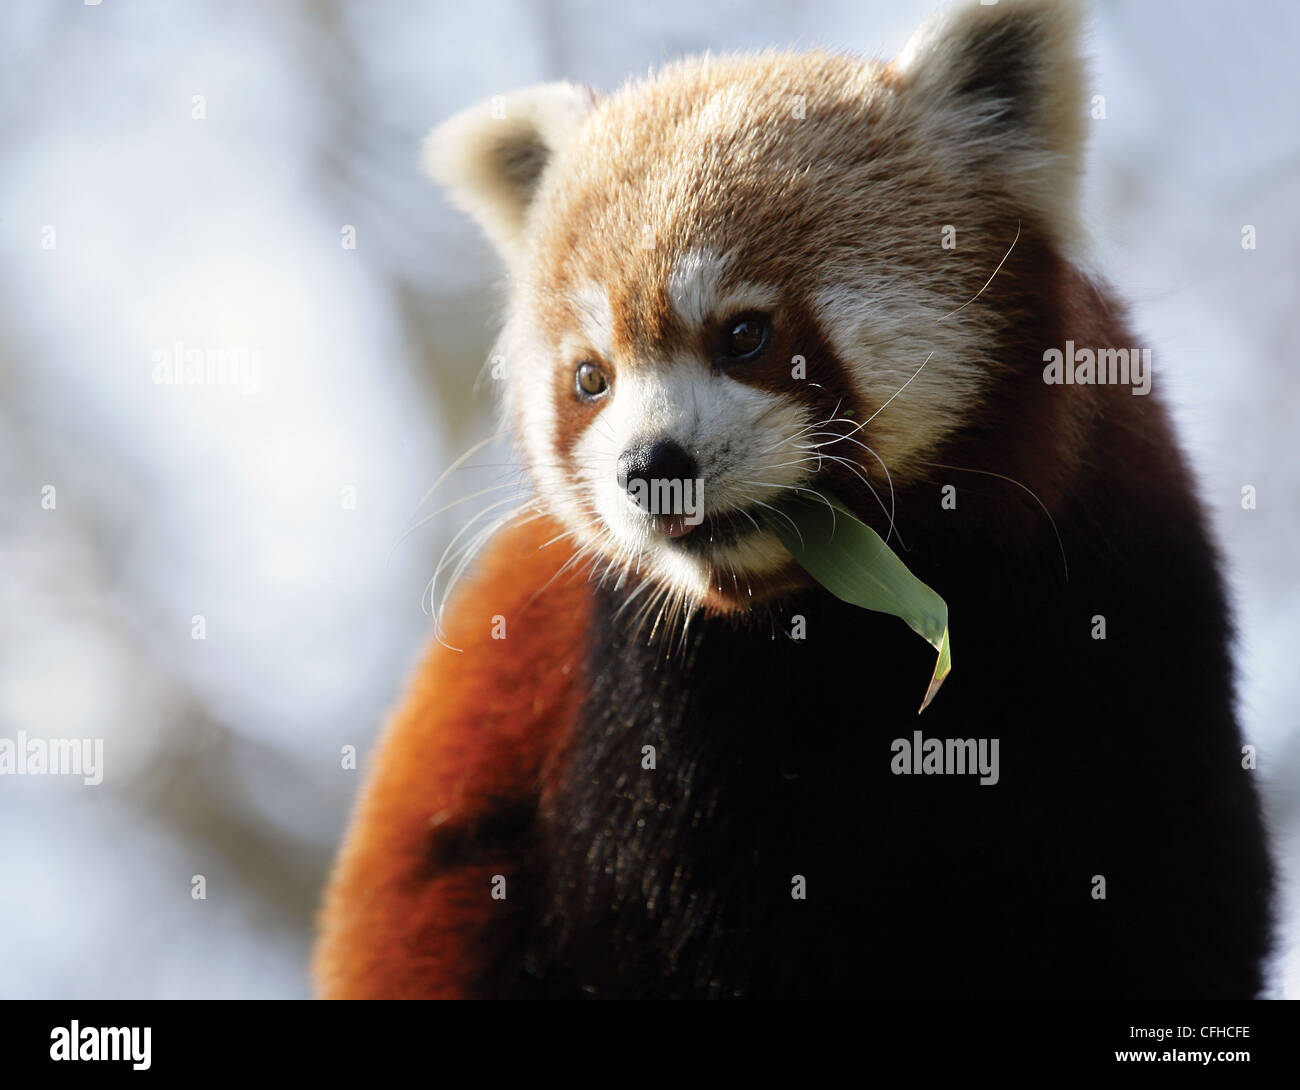 Le panda rouge (Ailurus fulgens) se nourrissent de feuilles de bambou Banque D'Images